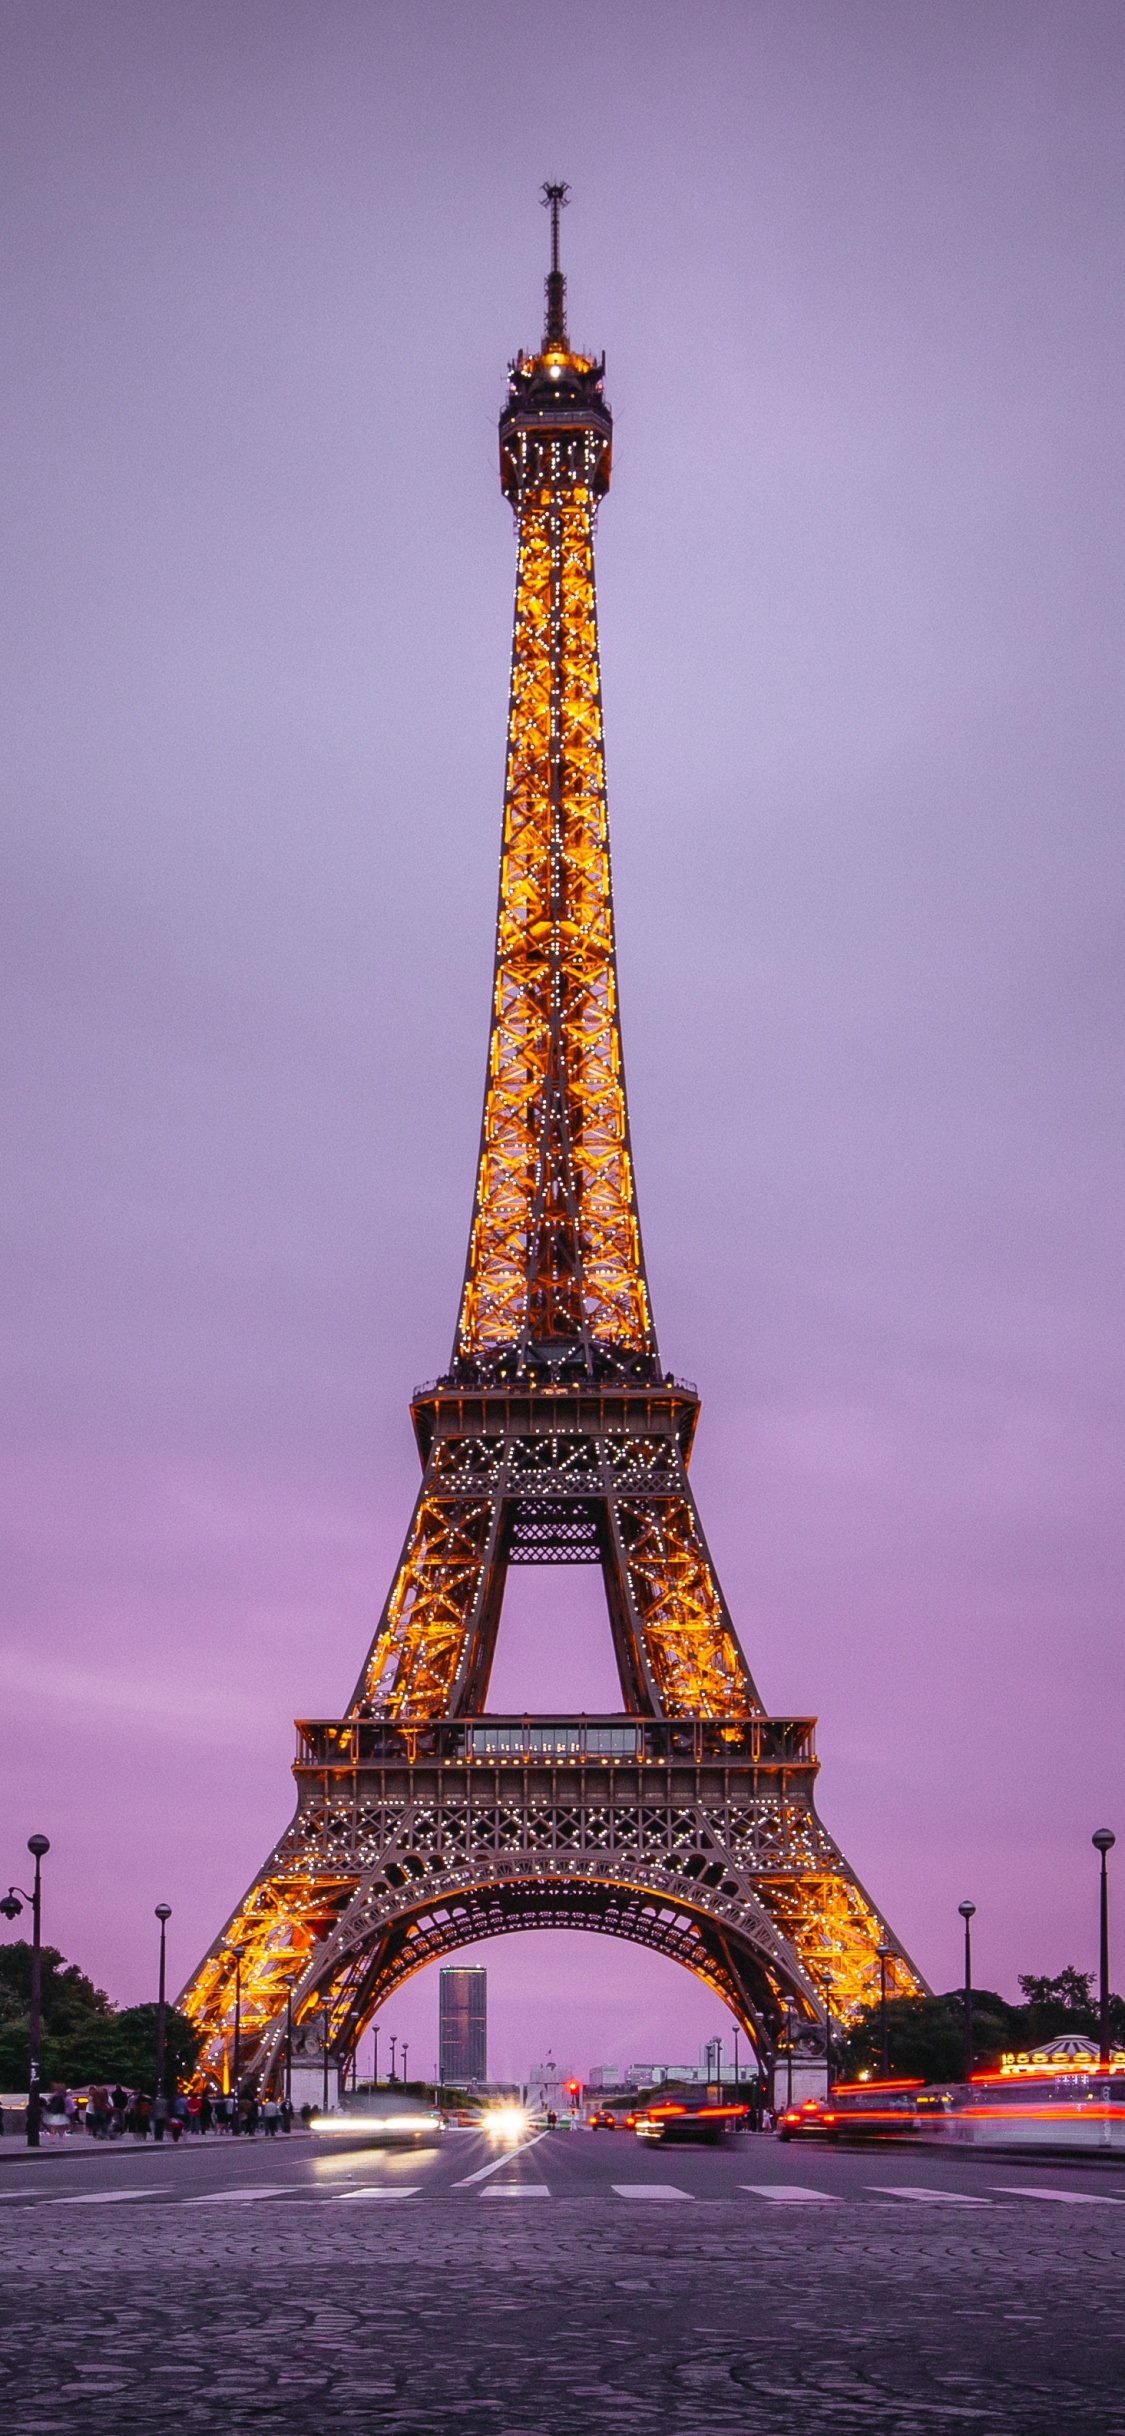 Tháp Eiffel Ở Paris Pháp Hình ảnh Sẵn có  Tải xuống Hình ảnh Ngay bây giờ   Pháp Paris  Pháp Tháp Eiffel  iStock